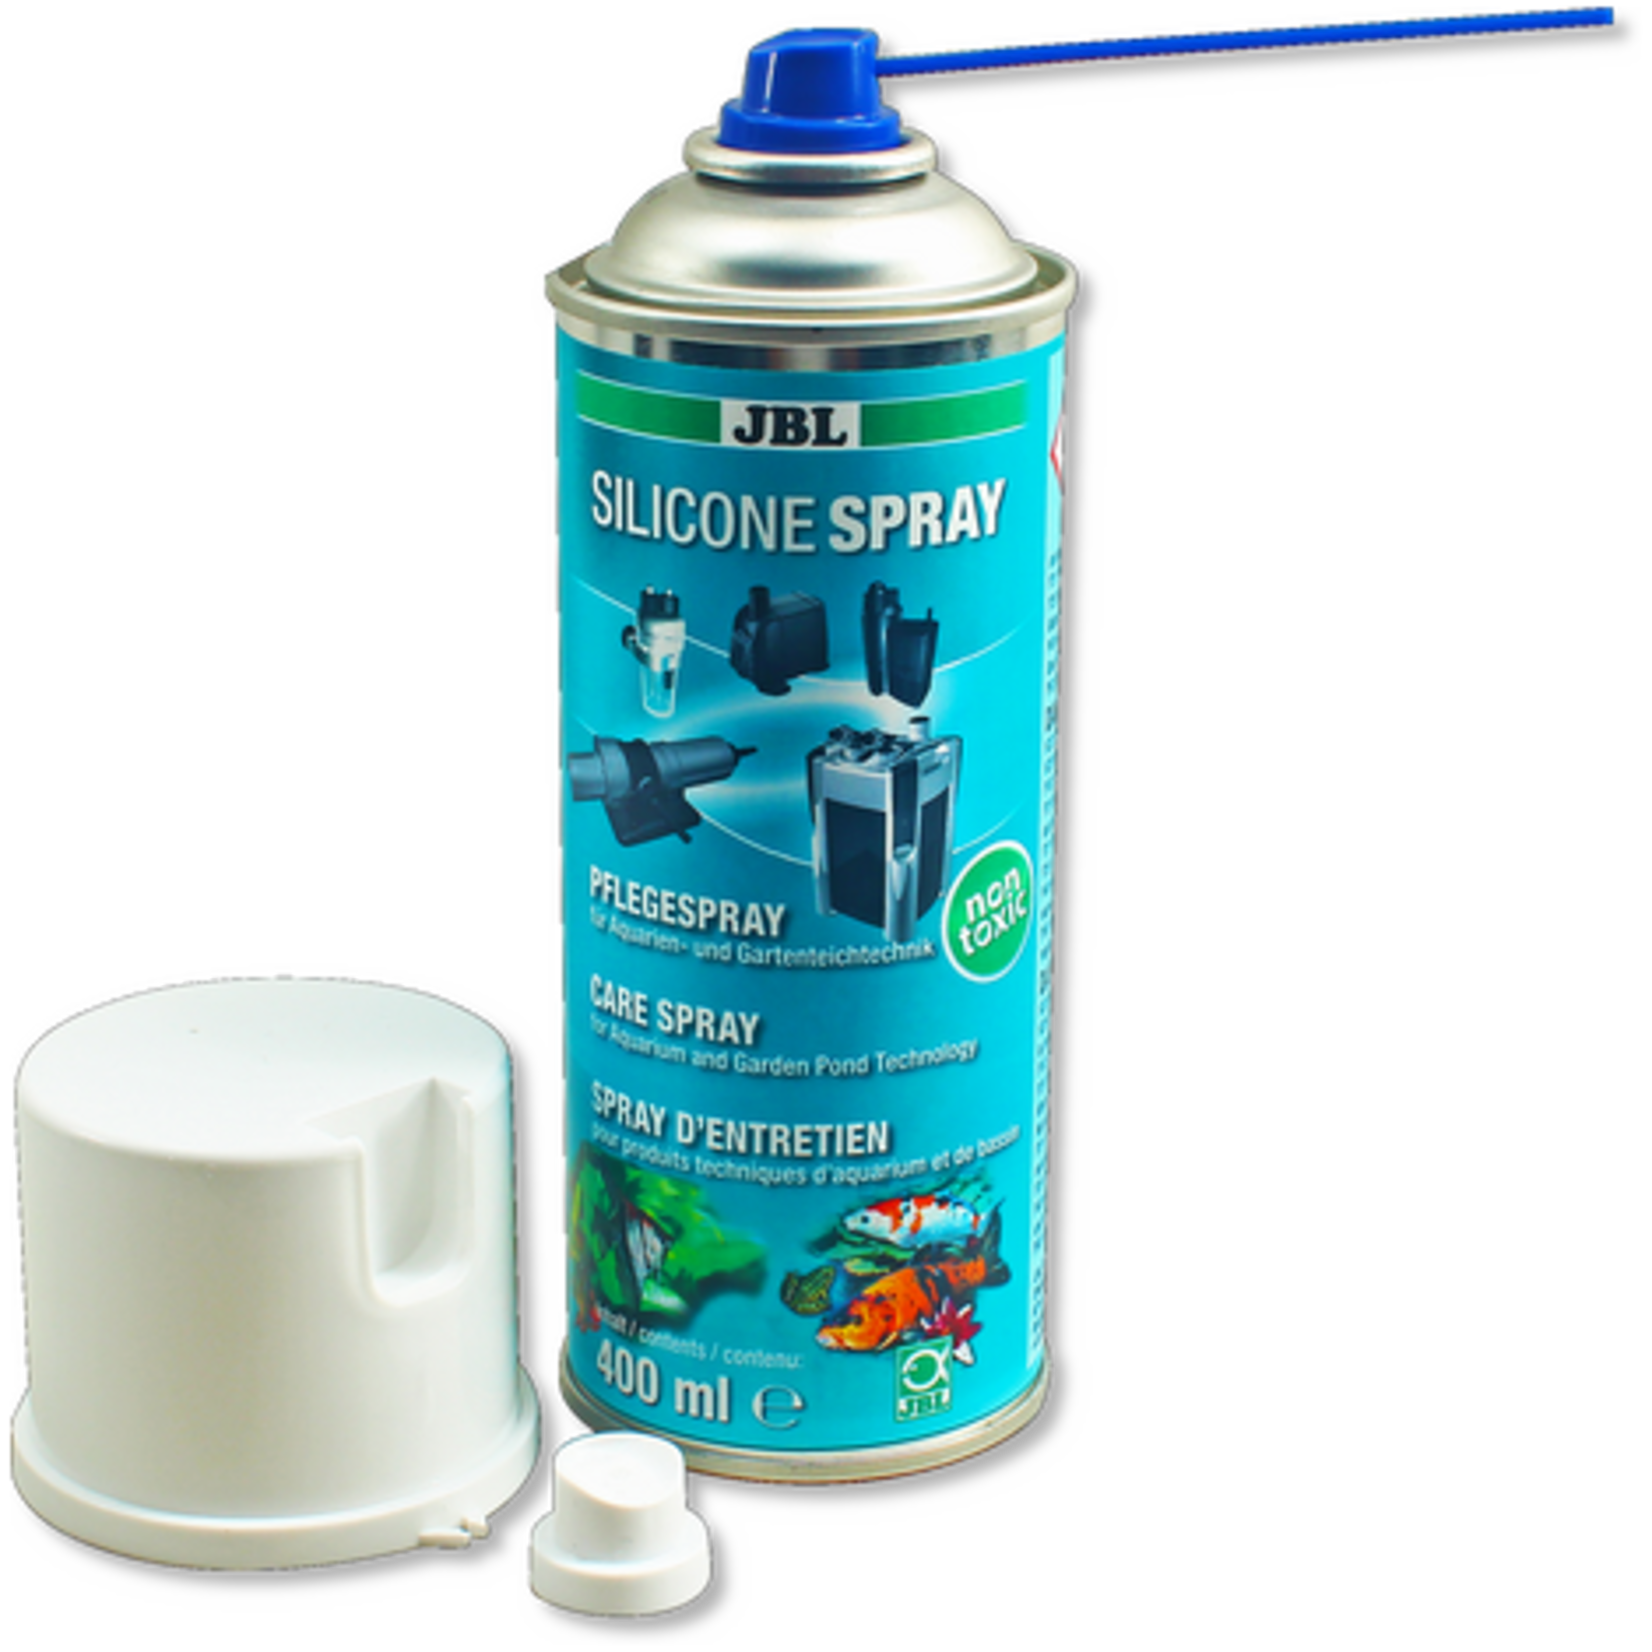 JBL Silicone spray 400ml